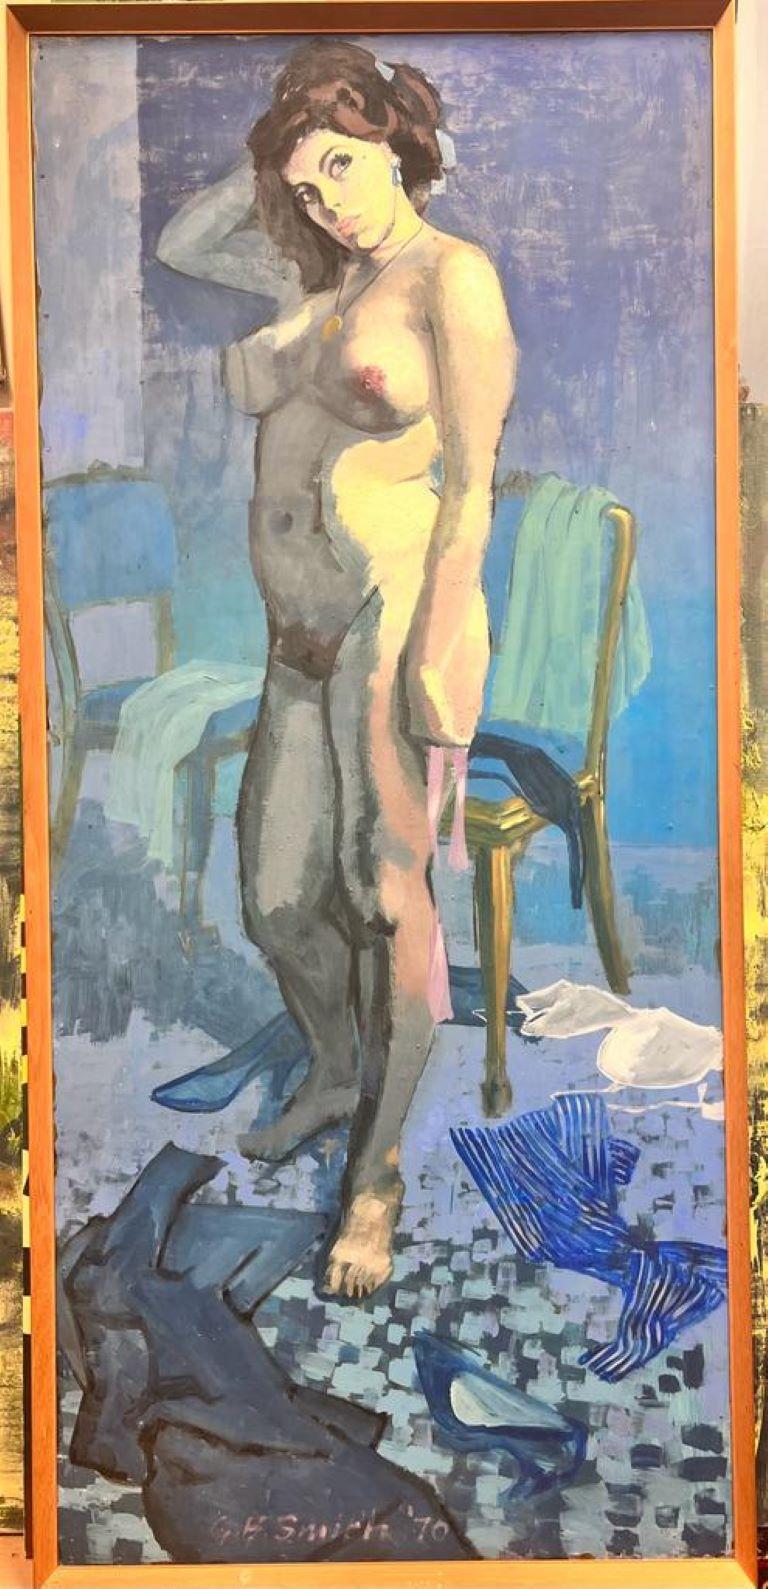 Großes britisches modernistisches Ölgemälde der 1970er Jahre, Porträt einer nackten Dame in blauen Farben – Painting von British 1970's